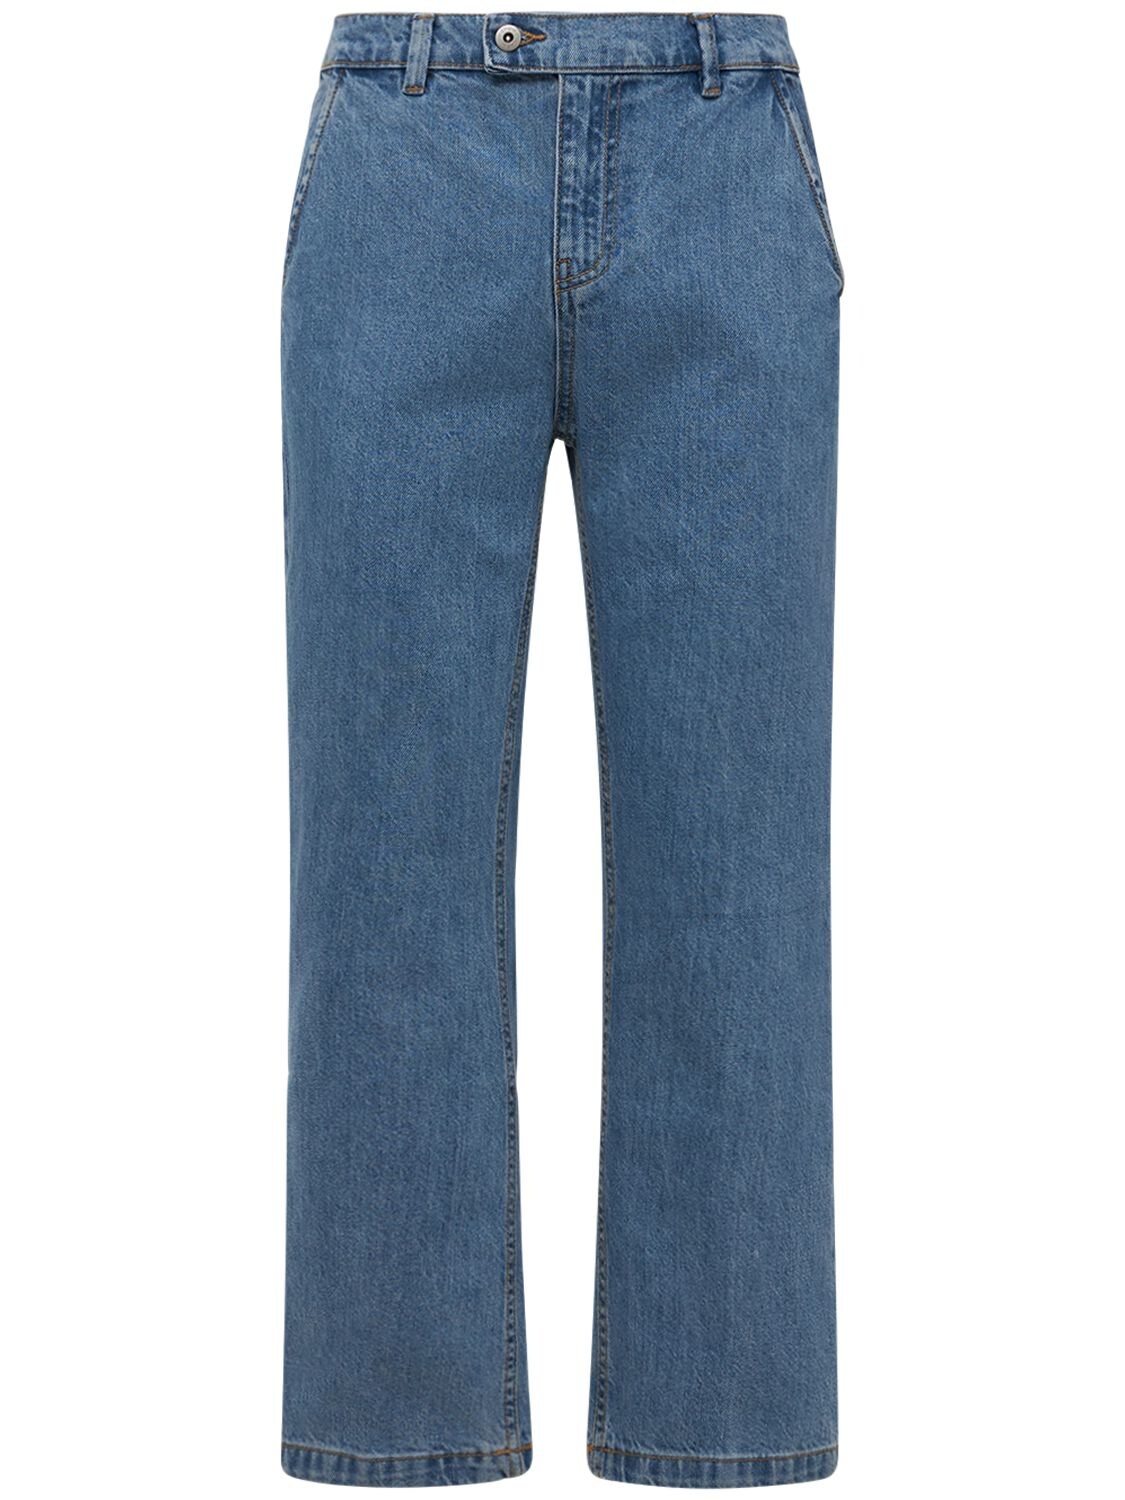 GIMAGUAS 24cm Cotton Denim Jeans